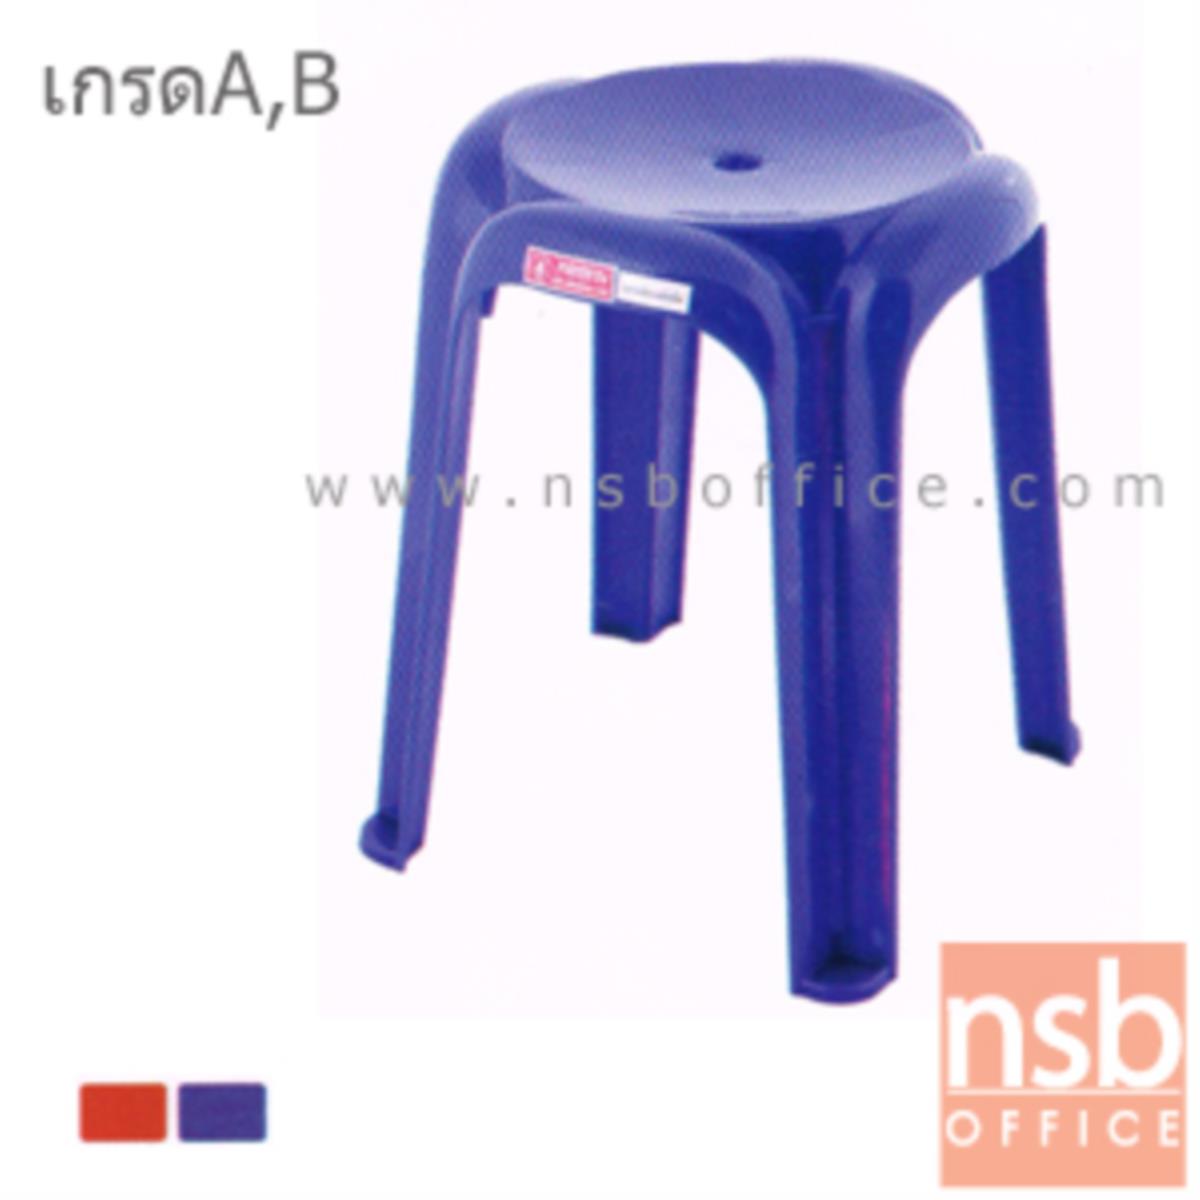 เก้าอี้พลาสติก รุ่น BEIJING_CHAIR ซ้อนทับได้ (ผลิตทั้งเกรด A และ B)